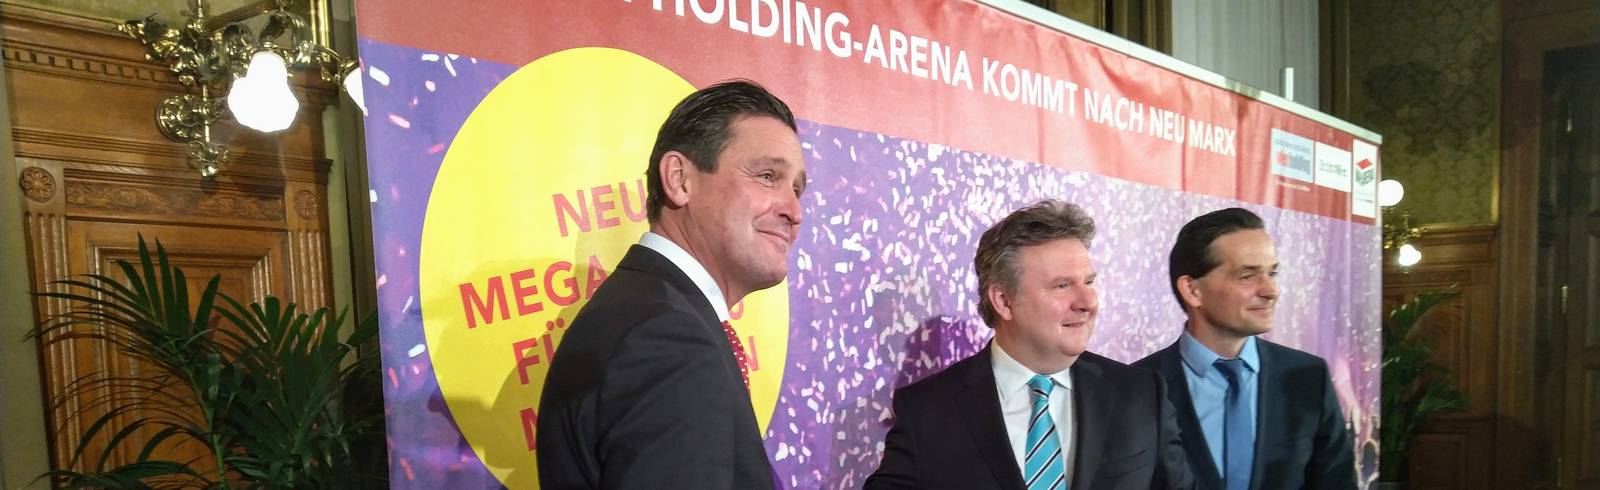 Neue Eventhalle heißt "Wien Holding - Arena"